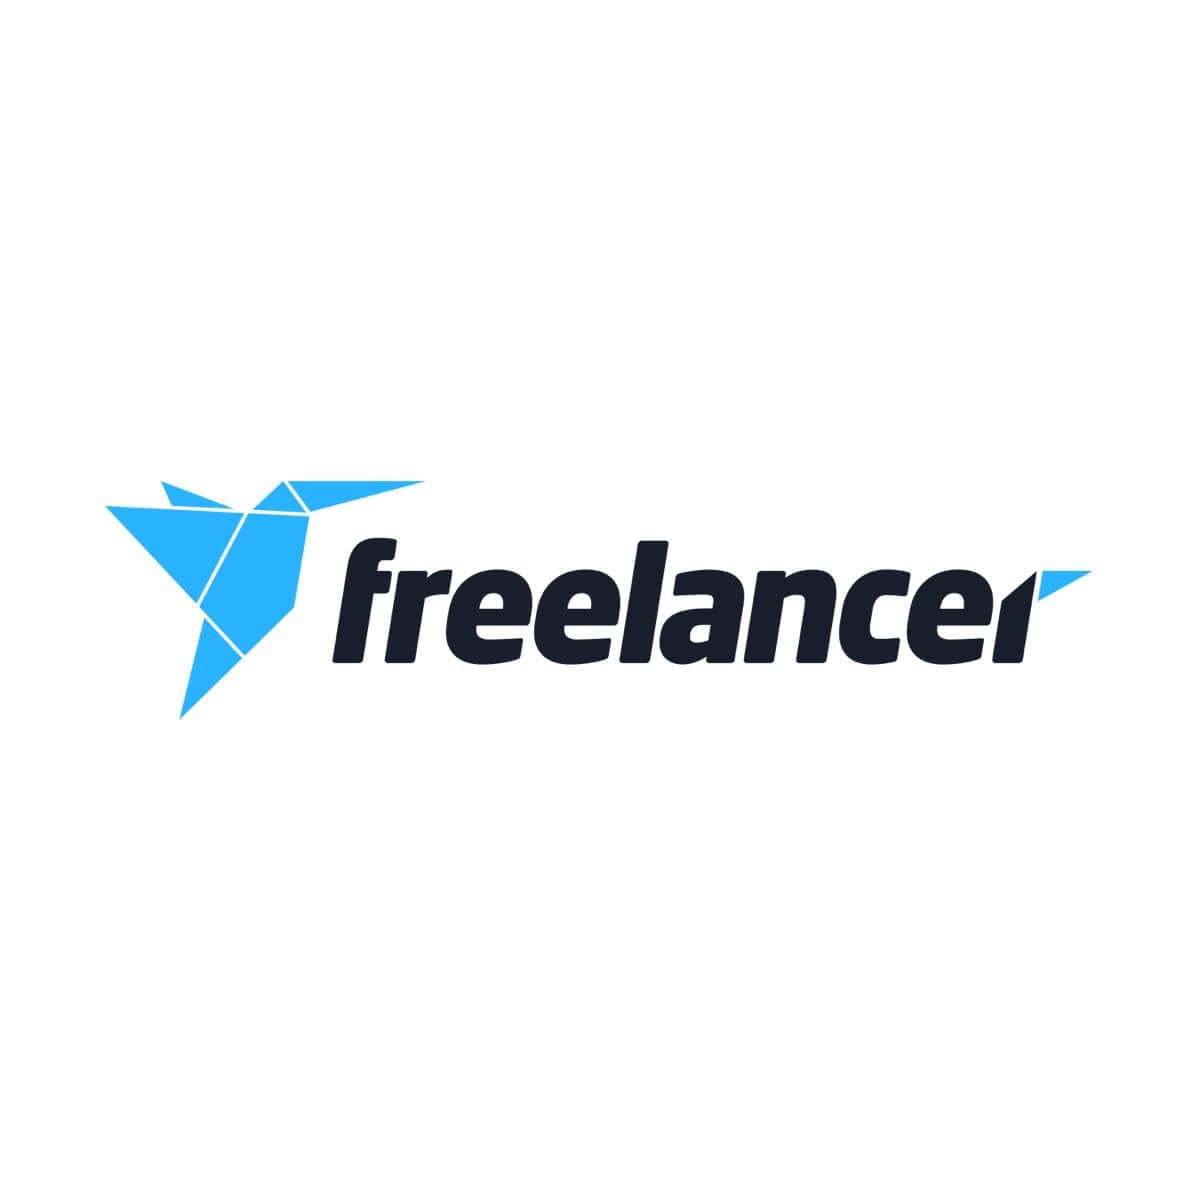 Freelancer Logo - Logo Design Jobs for February 2019 | Freelancer